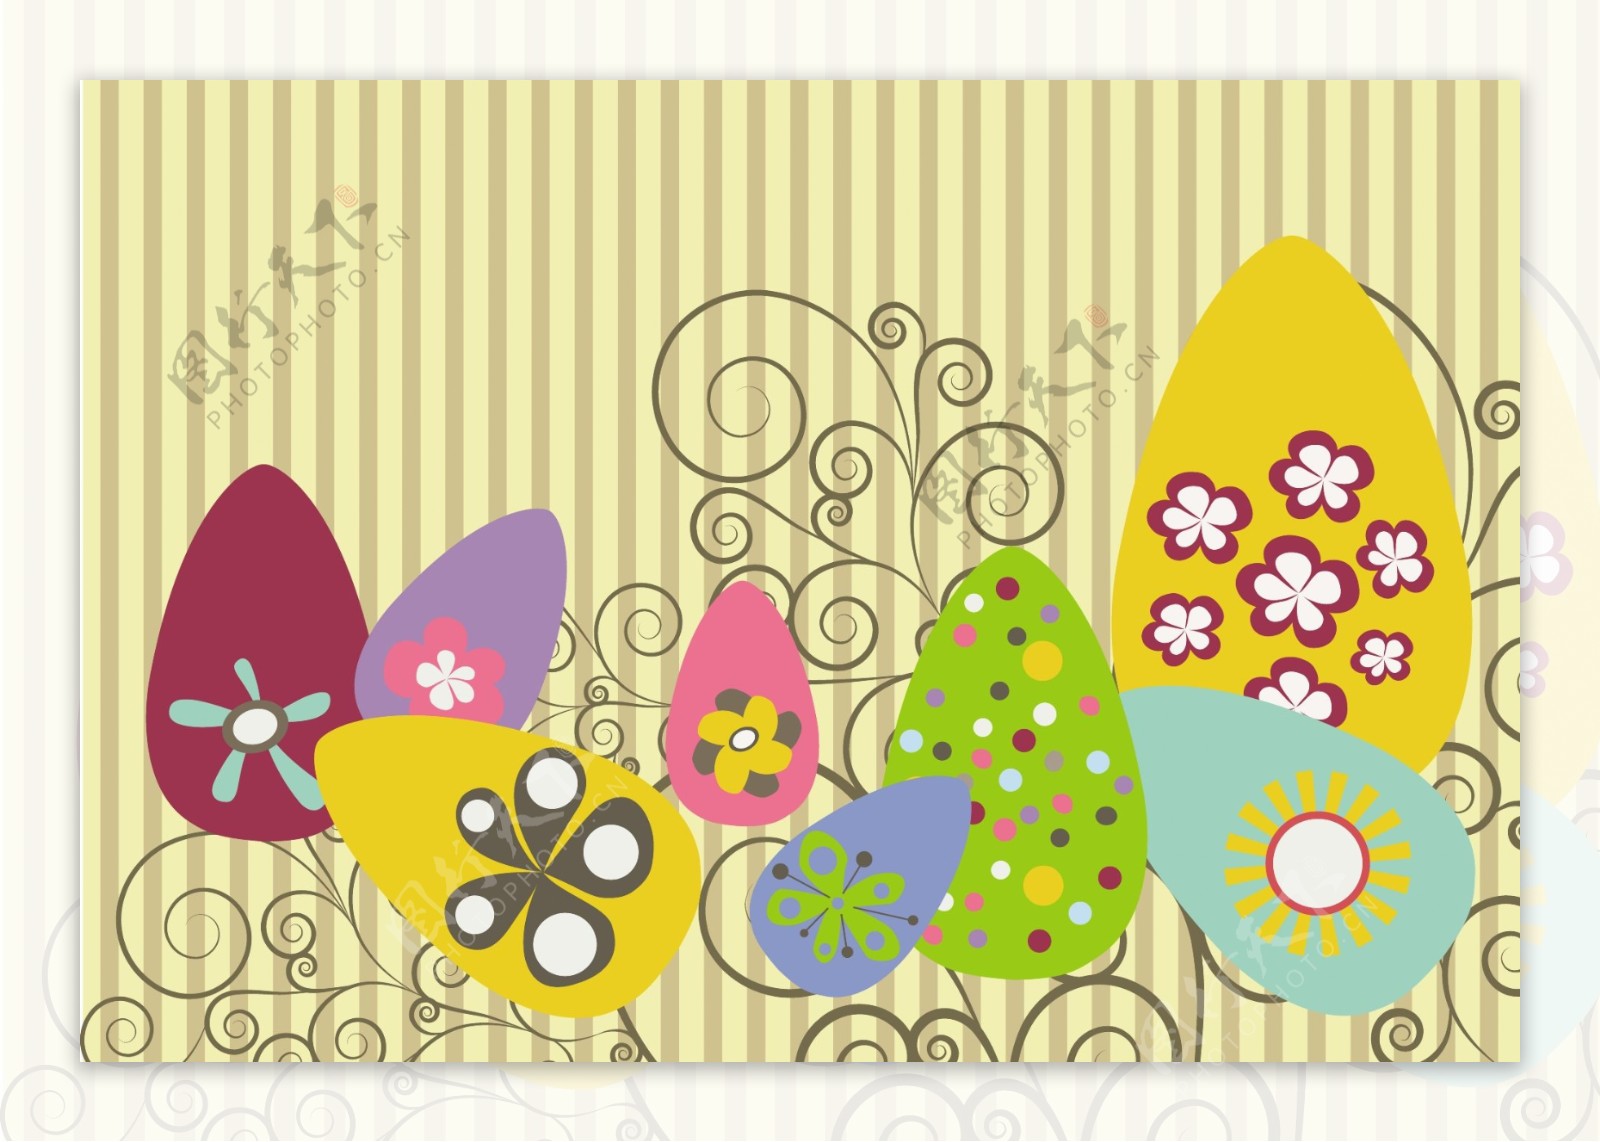 复活节插画的花和漂亮的蛋